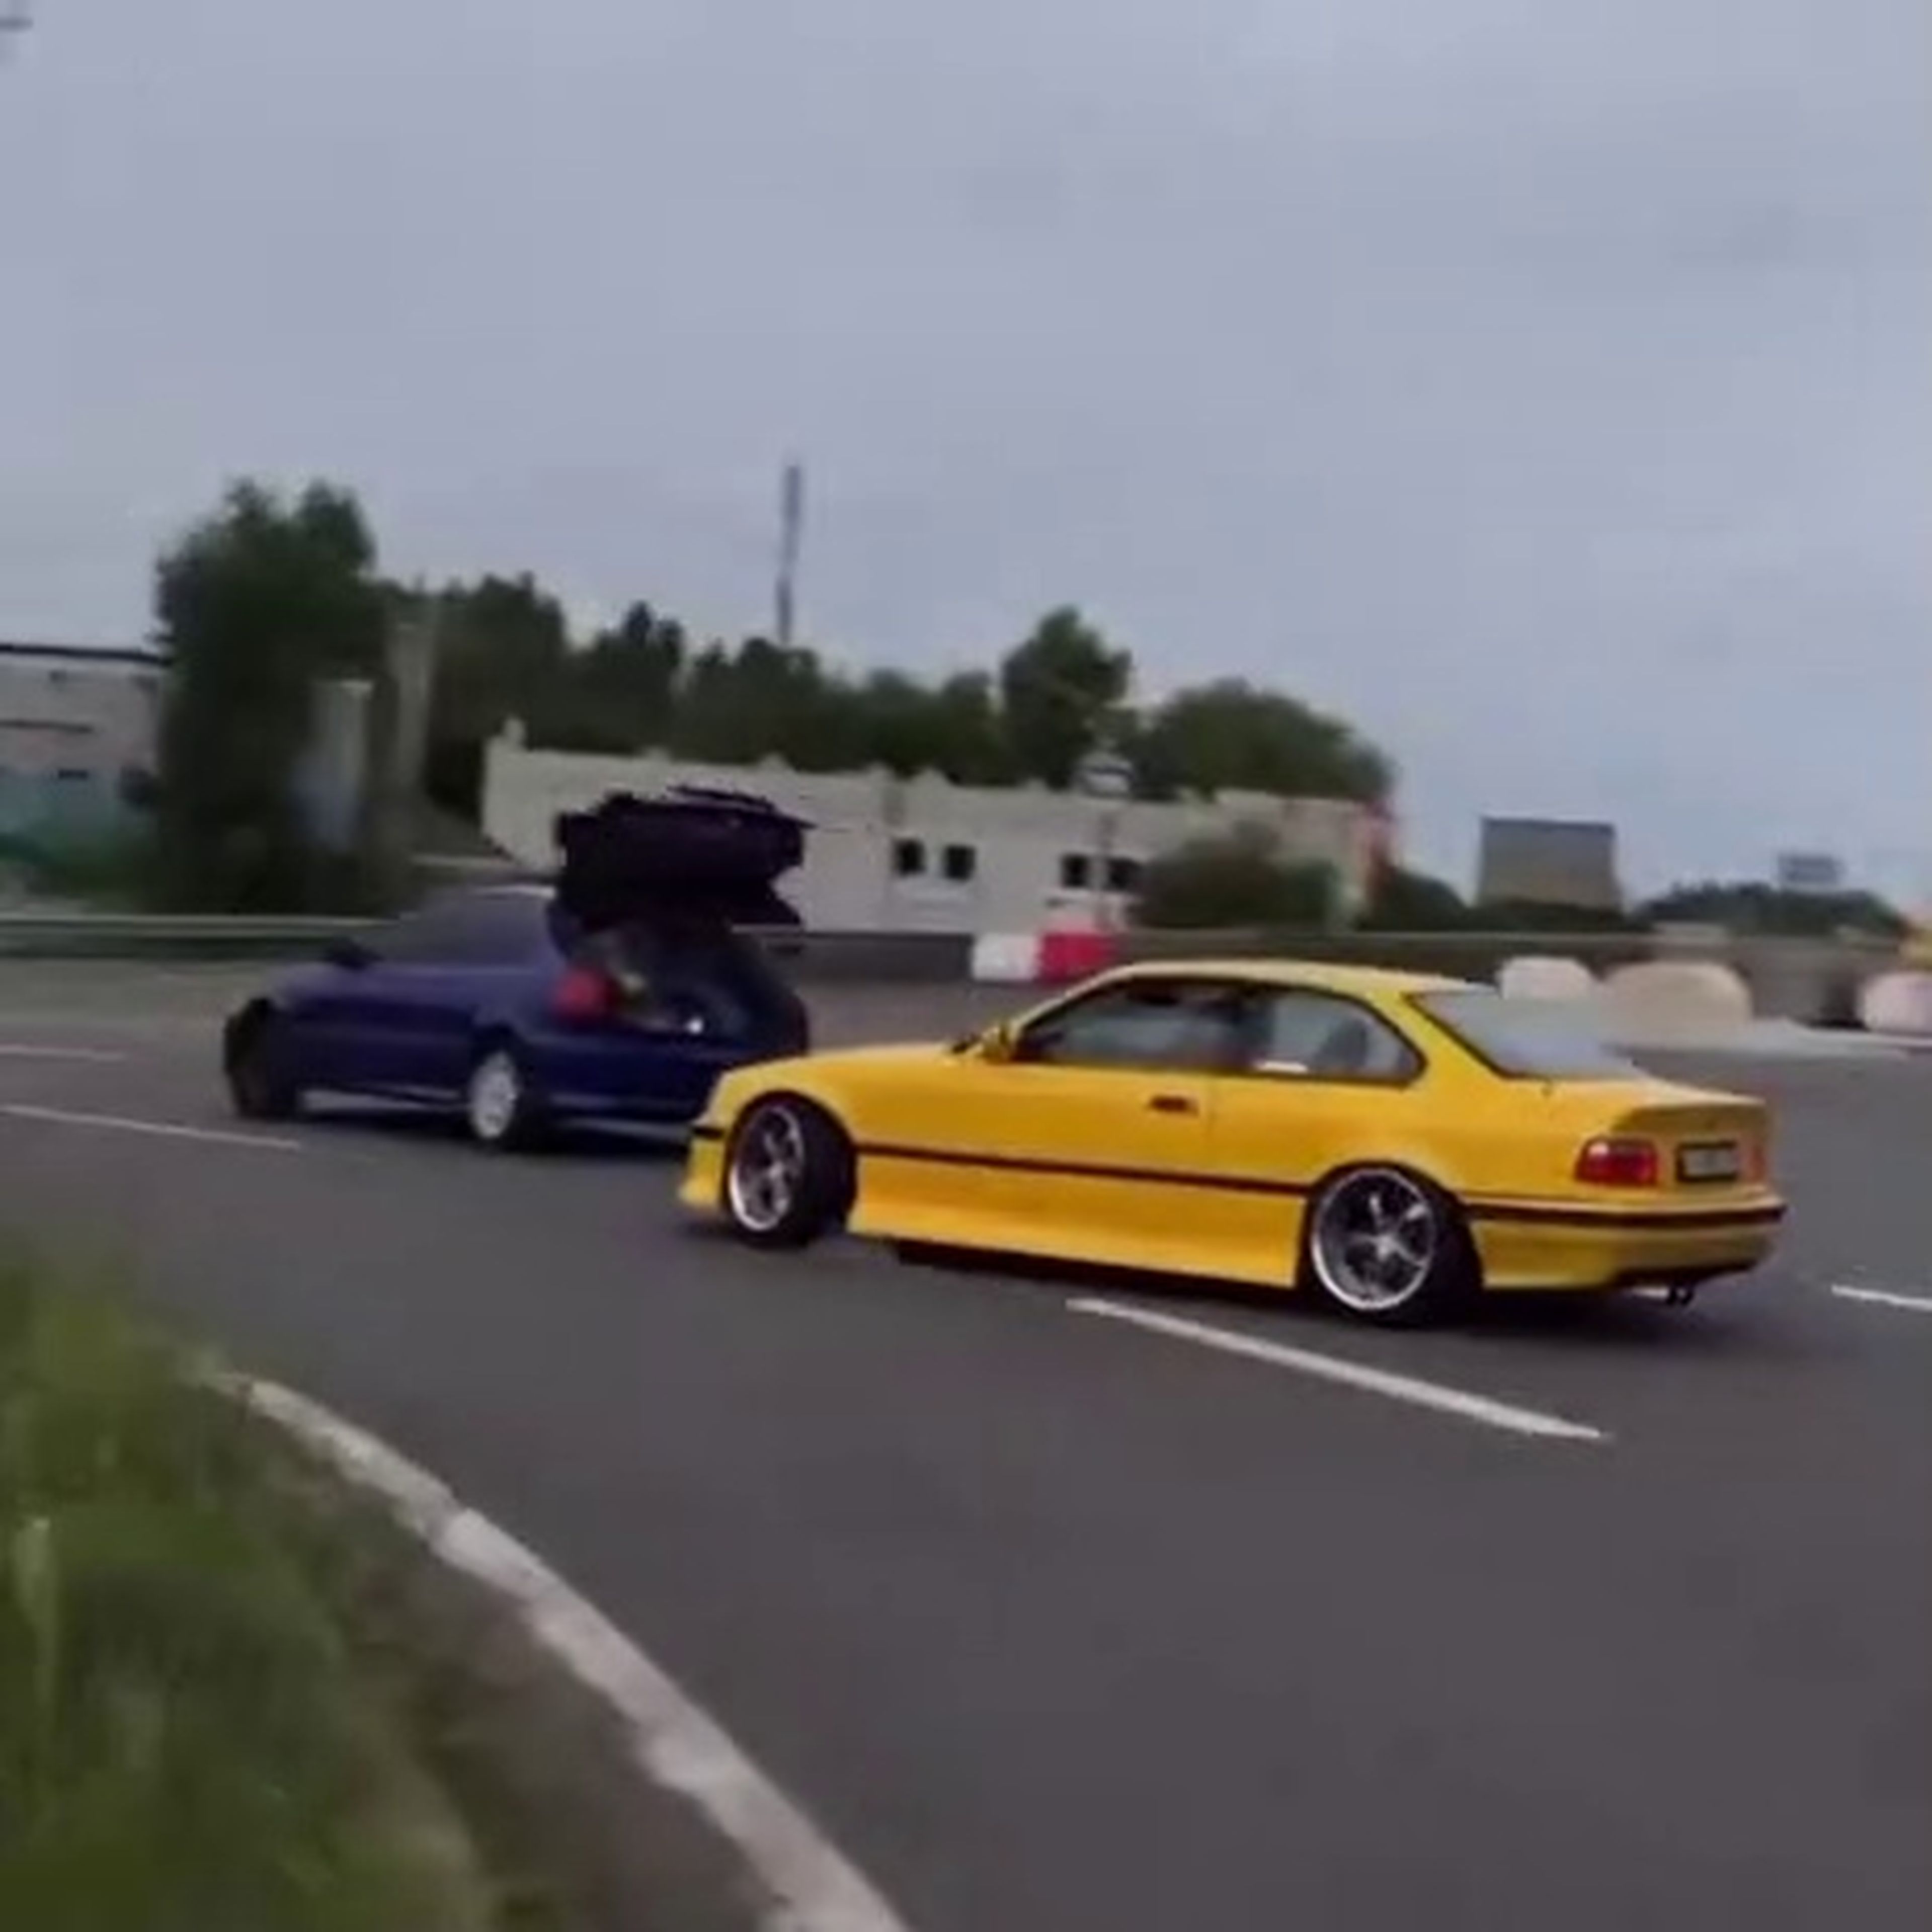 VÍDEO: Un Civic con el maletero abierto y un BMW M3 amarillo driftando detrás, ¿alguien sabe qué está pasando?